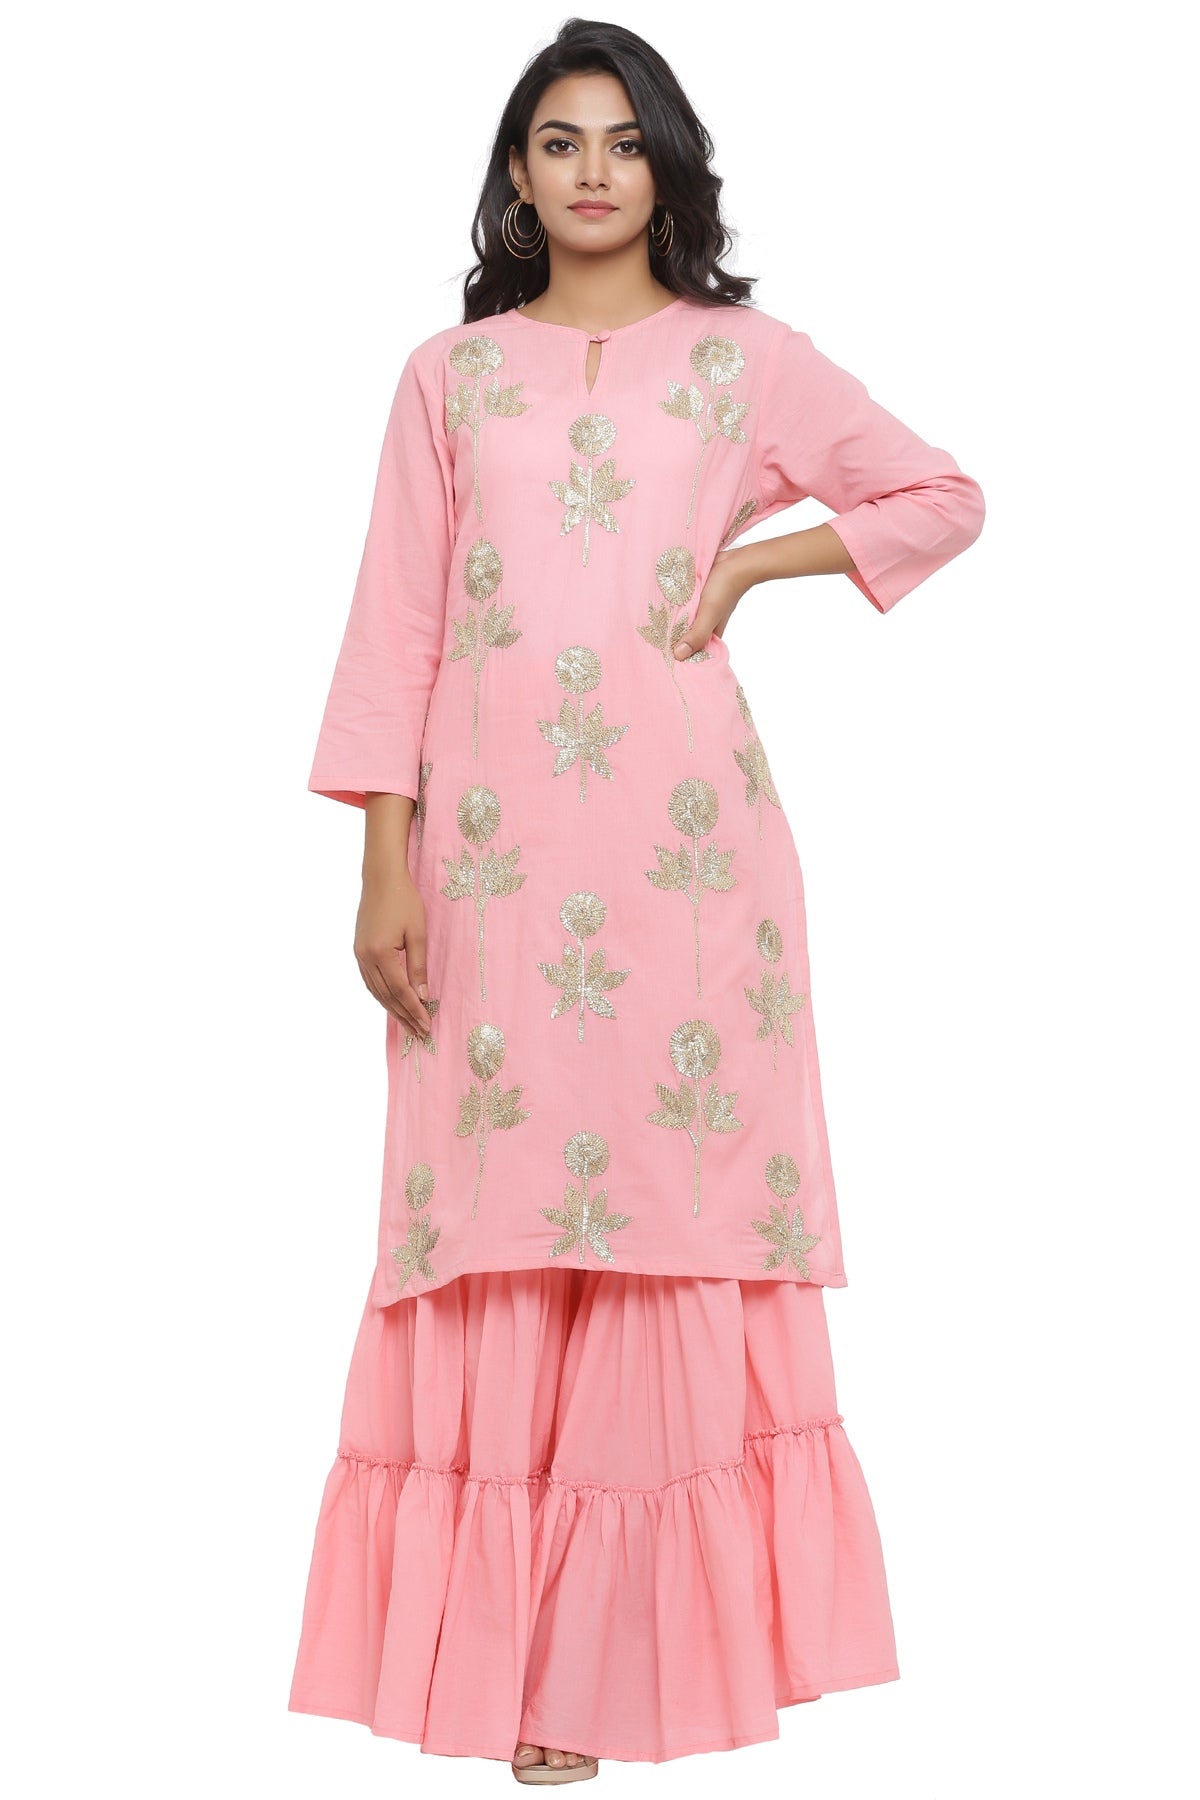 Ranas Pink Color Cotton Suit